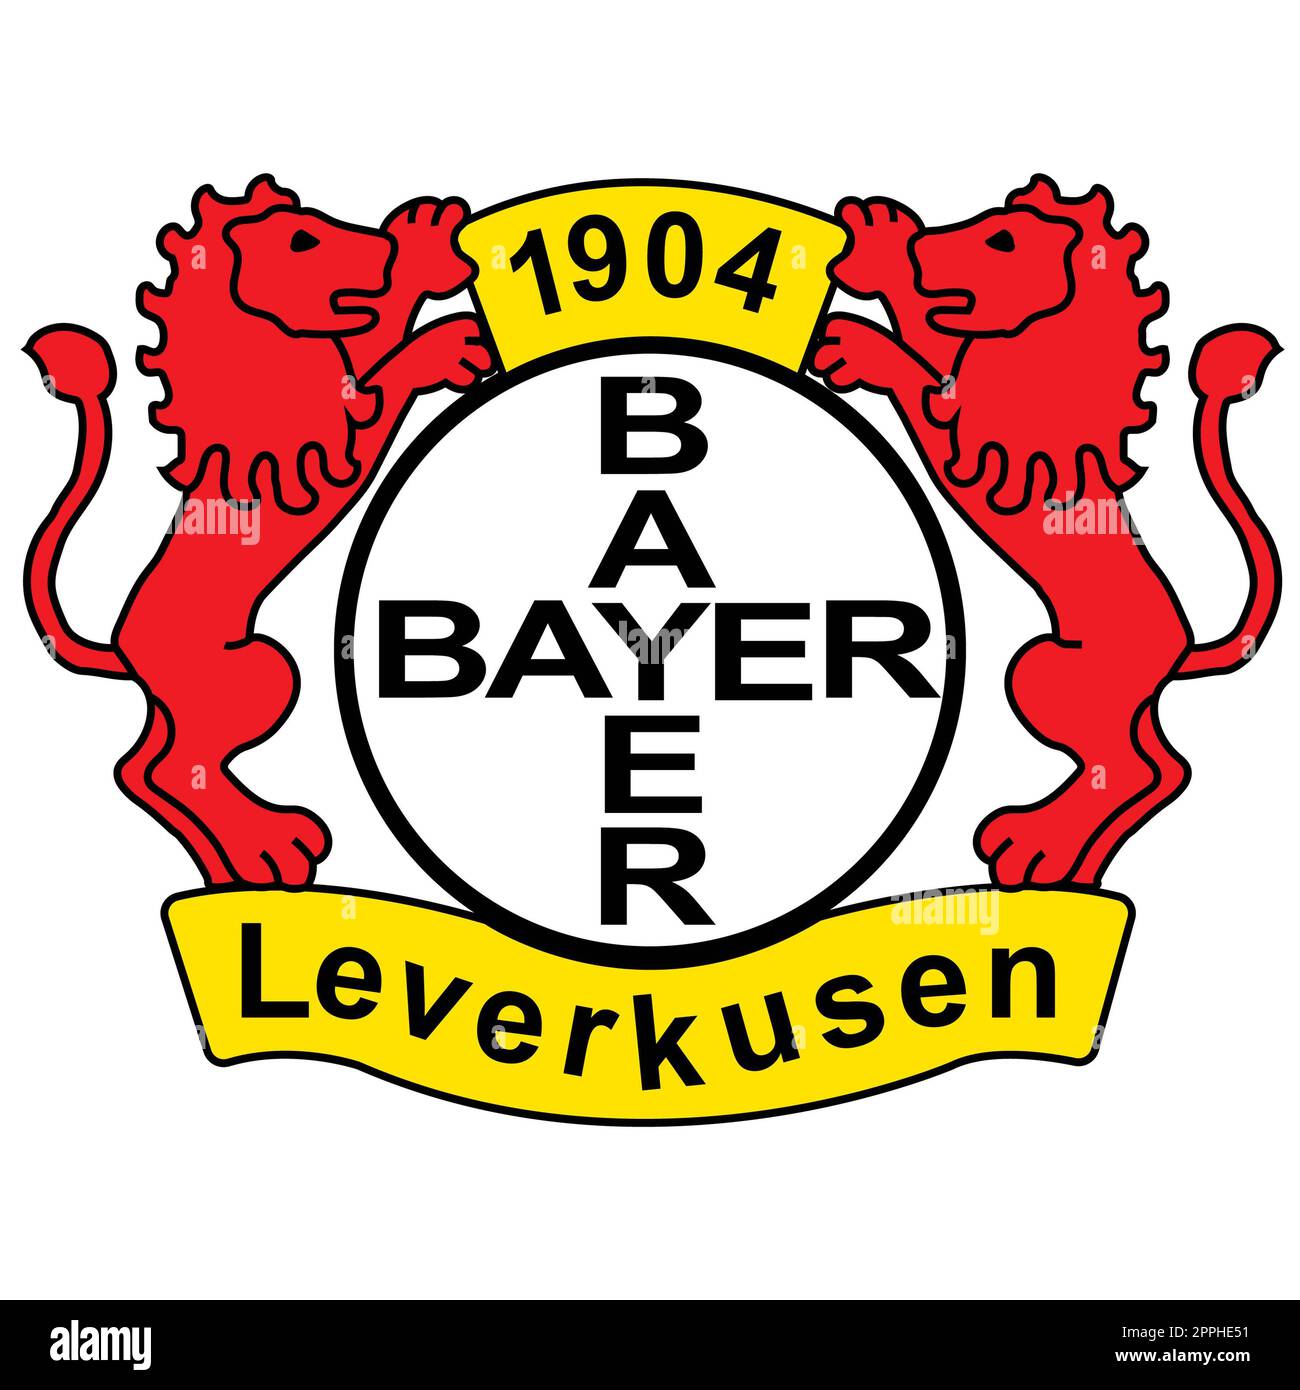 Francoforte sul meno, Germania - 10.23.2022 Logo della squadra di calcio tedesca Bayer 04. Immagine vettoriale. Foto Stock